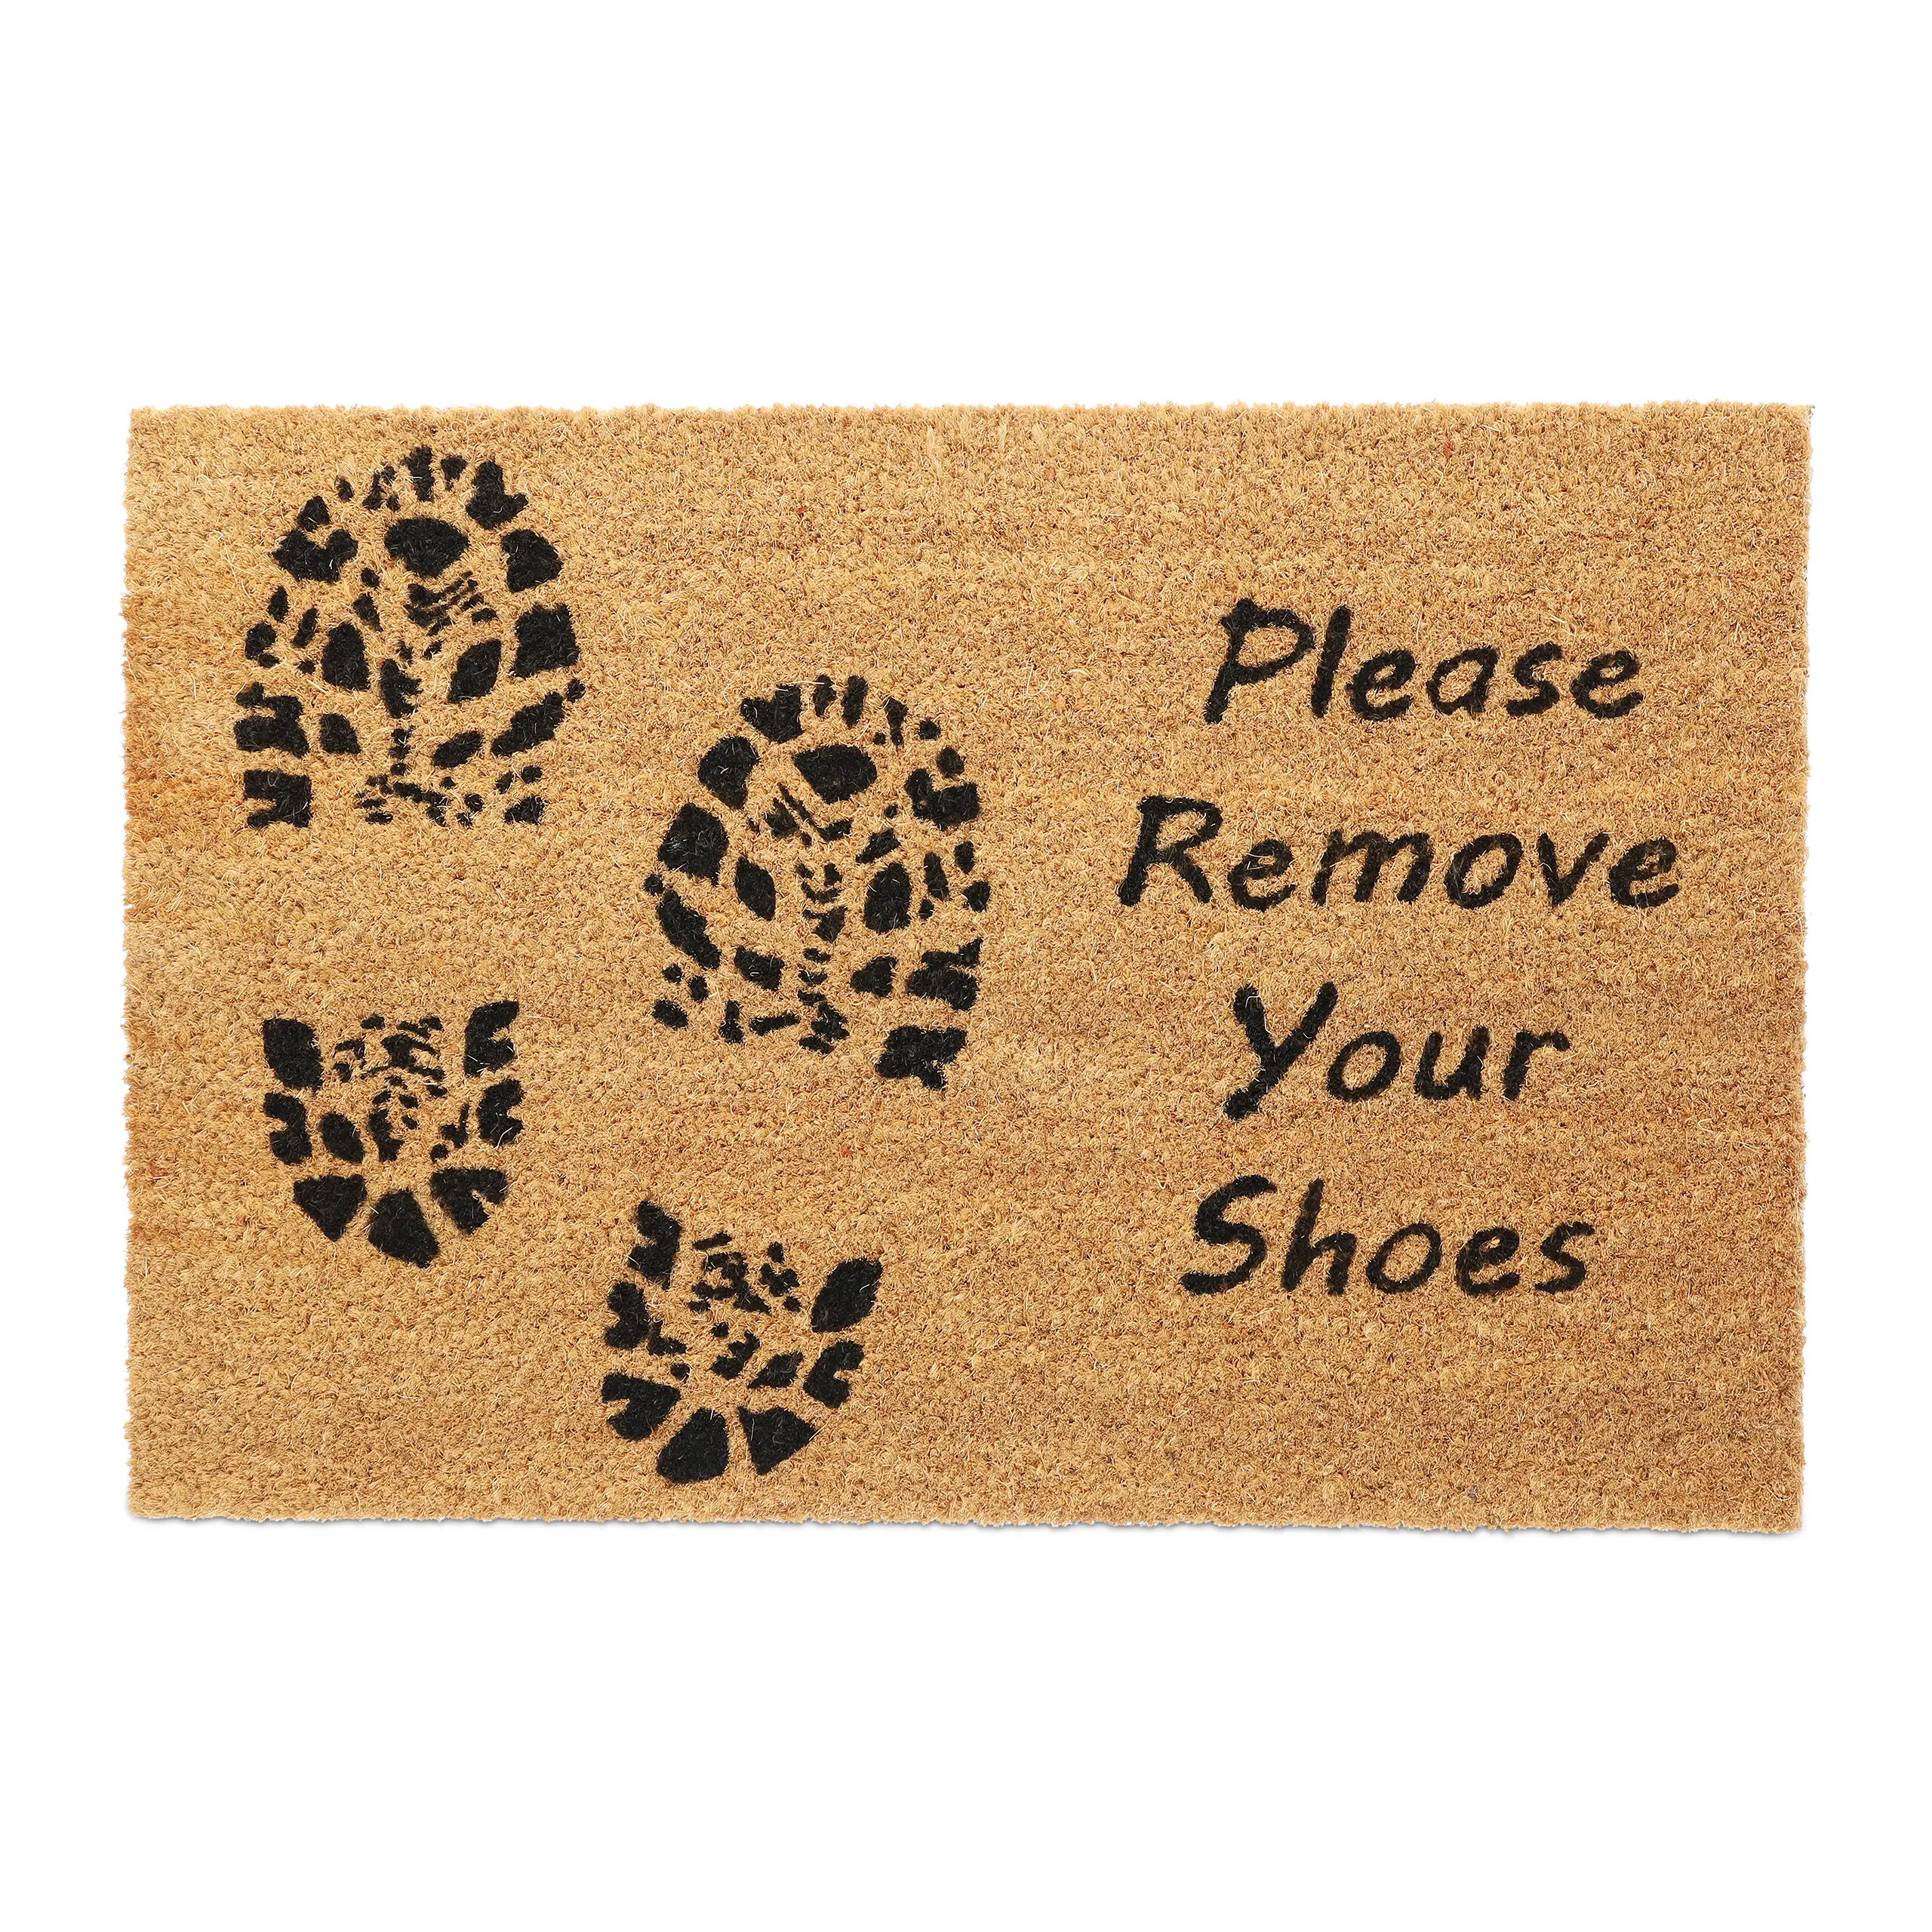 Kokos Fu脽matte Please Remove Your Shoes